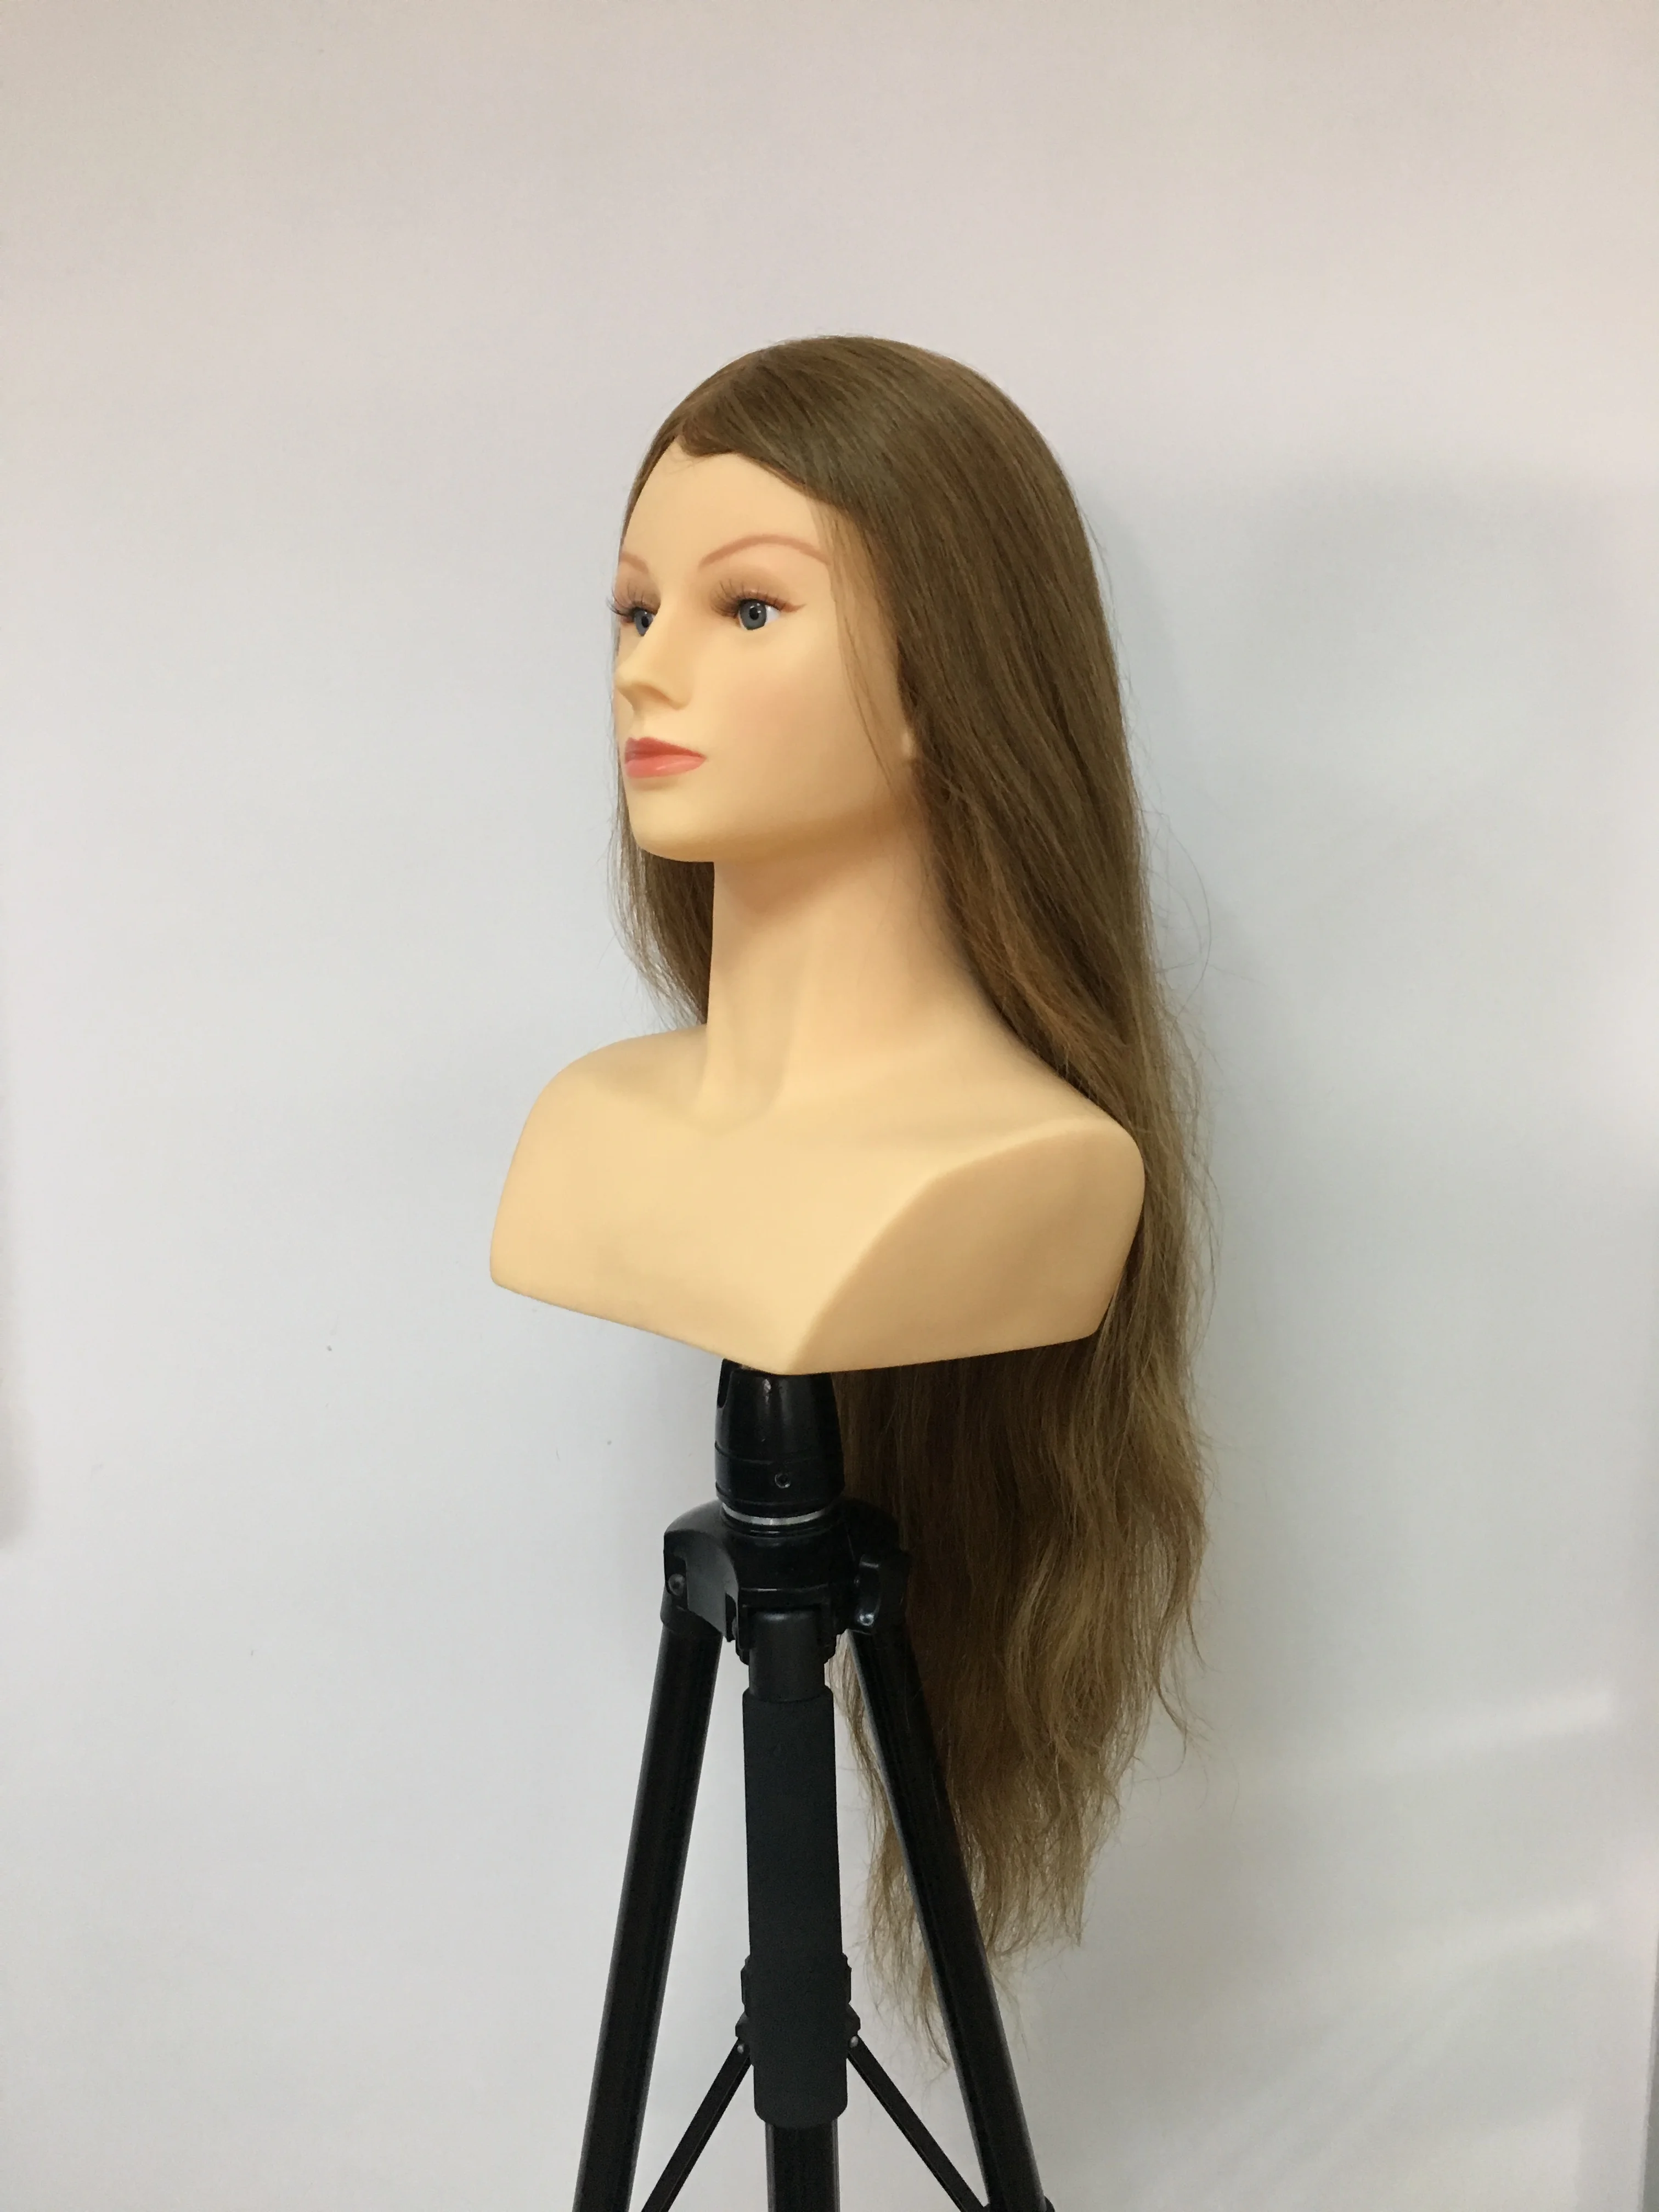 PROHAIR-60 см, 24 дюйма,, светильник для человеческих волос, коричневая голова для соревнований, манекен для парикмахерских, Кукольная голова для парикмахеров